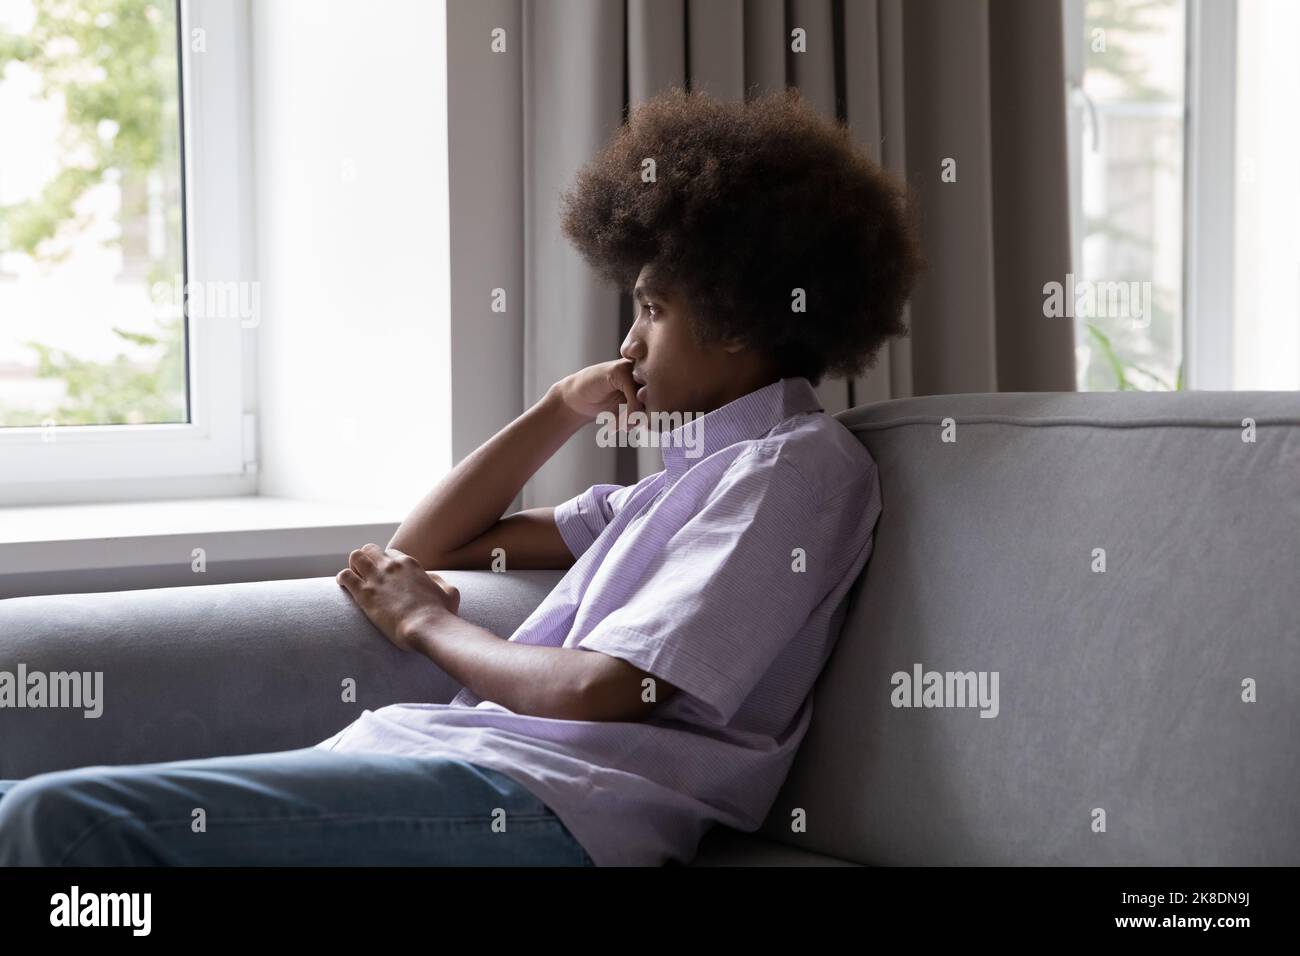 Un adolescent africain triste est assis sur un canapé donnant par la fenêtre Banque D'Images